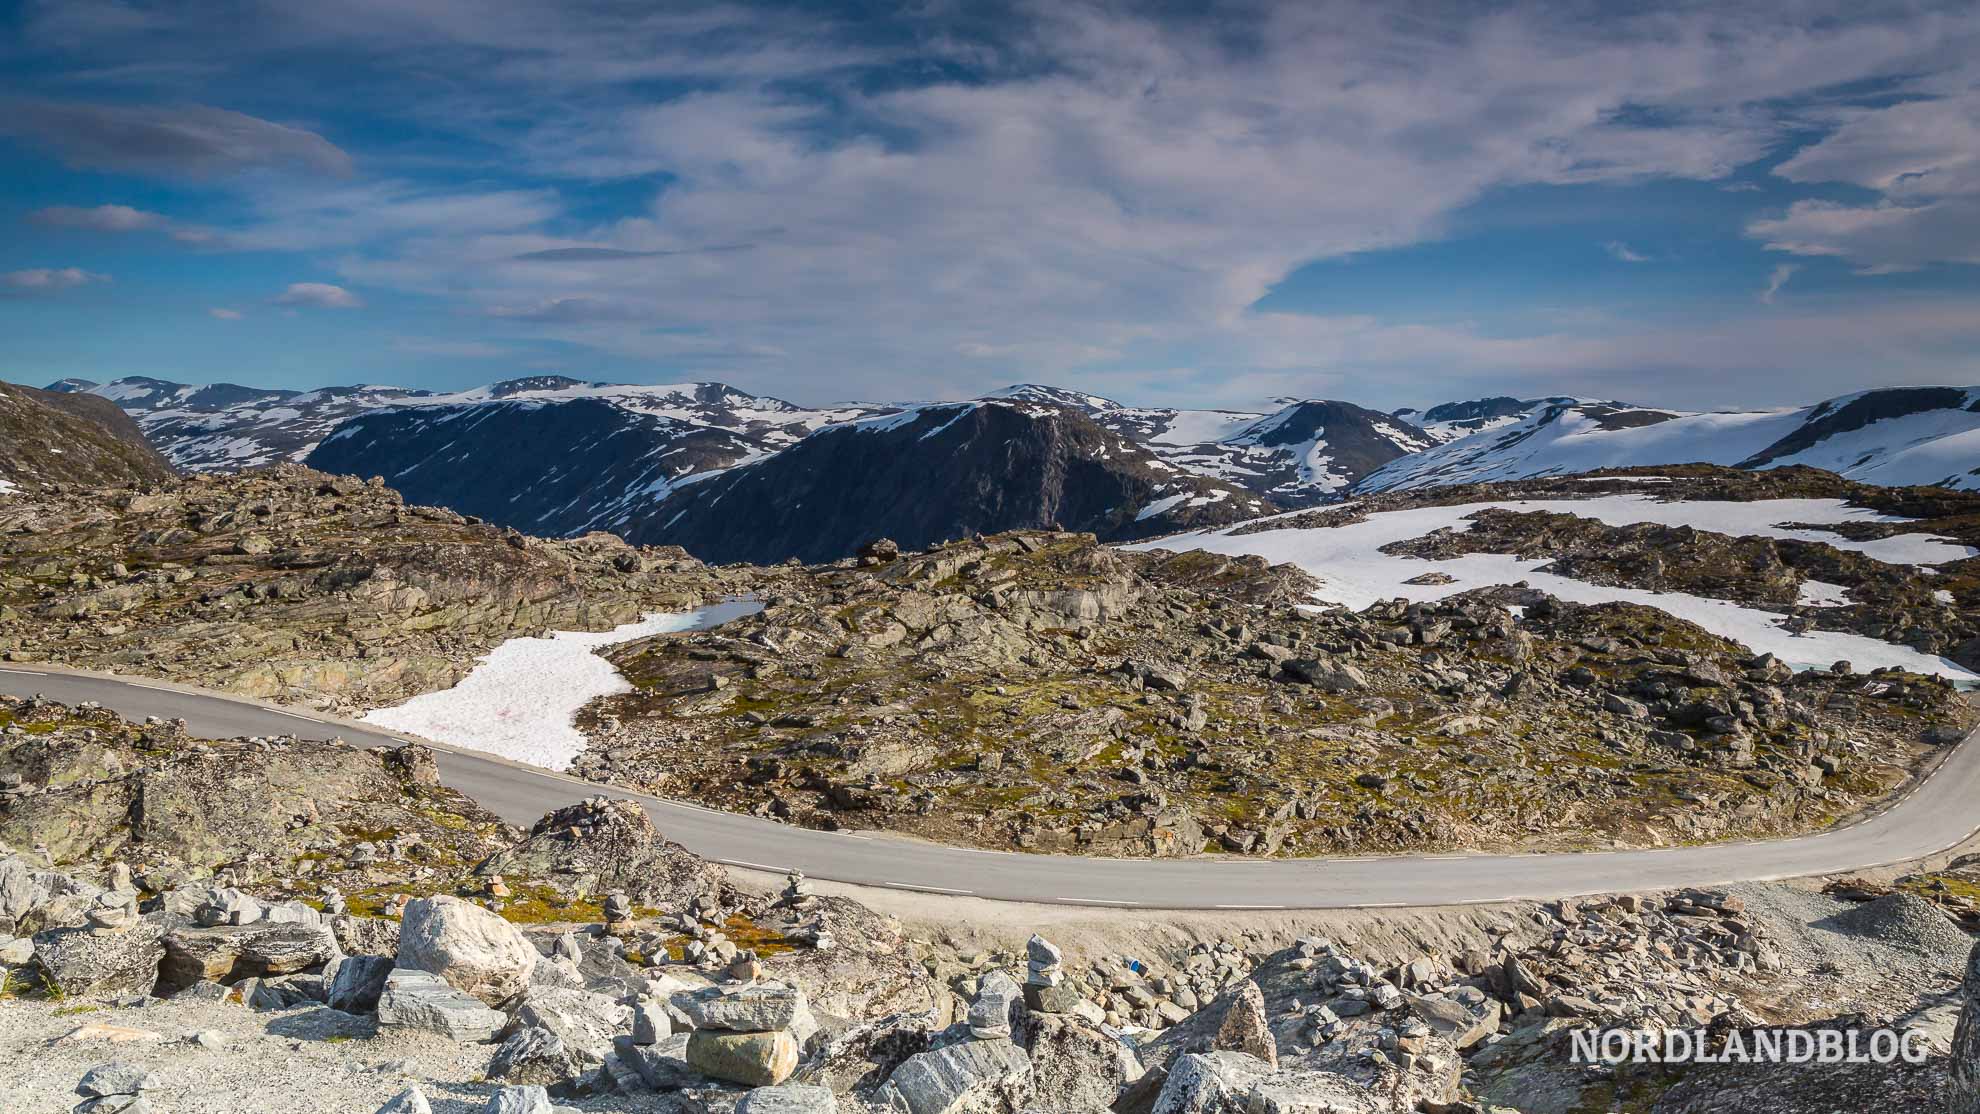 Strasse zum Aussichtspunkt Dalsnibba am Geirangerfjord (Norwegen) Nordlandblog